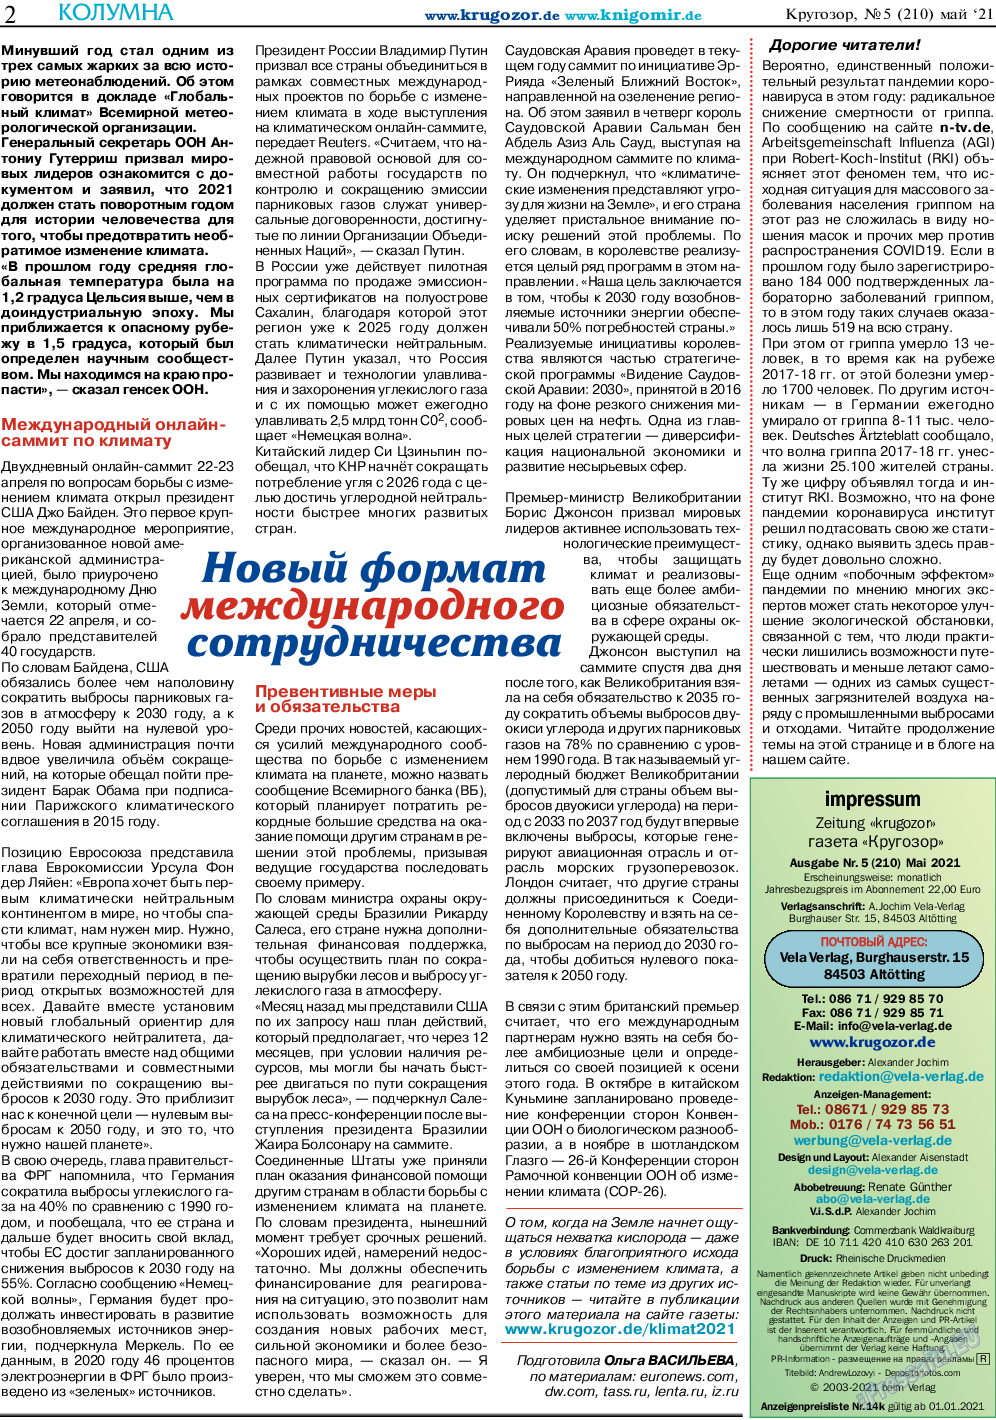 Кругозор, газета. 2021 №5 стр.2